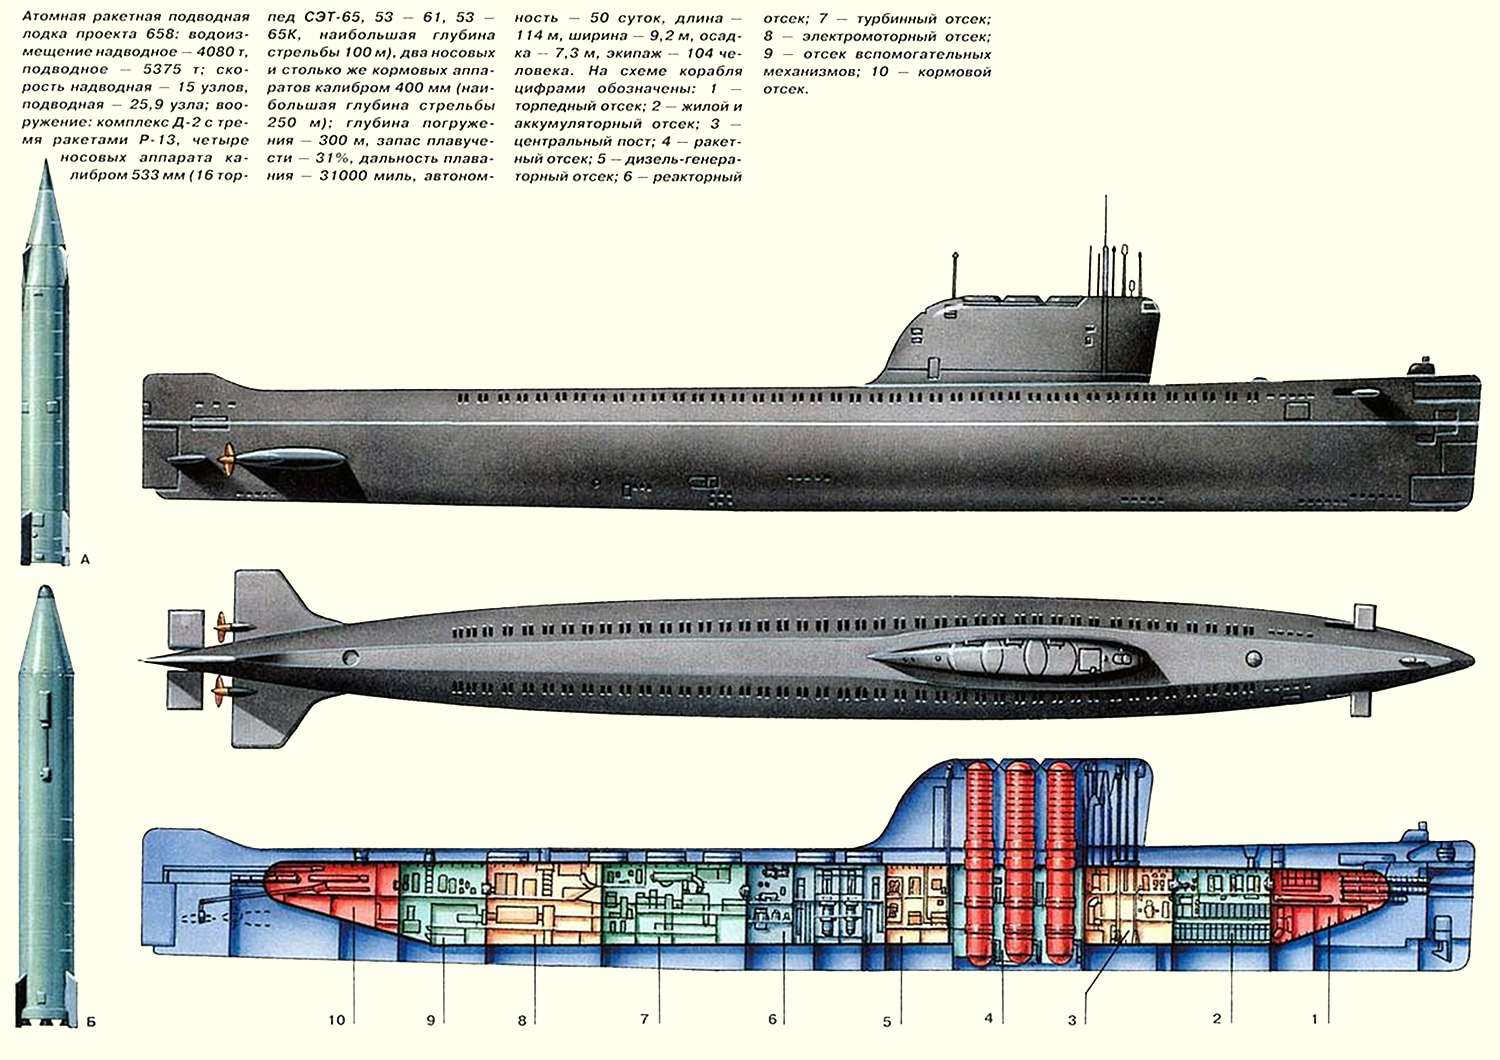 Описание, спецификация подводной лодки К-19 (Description, specification submarine K-19)